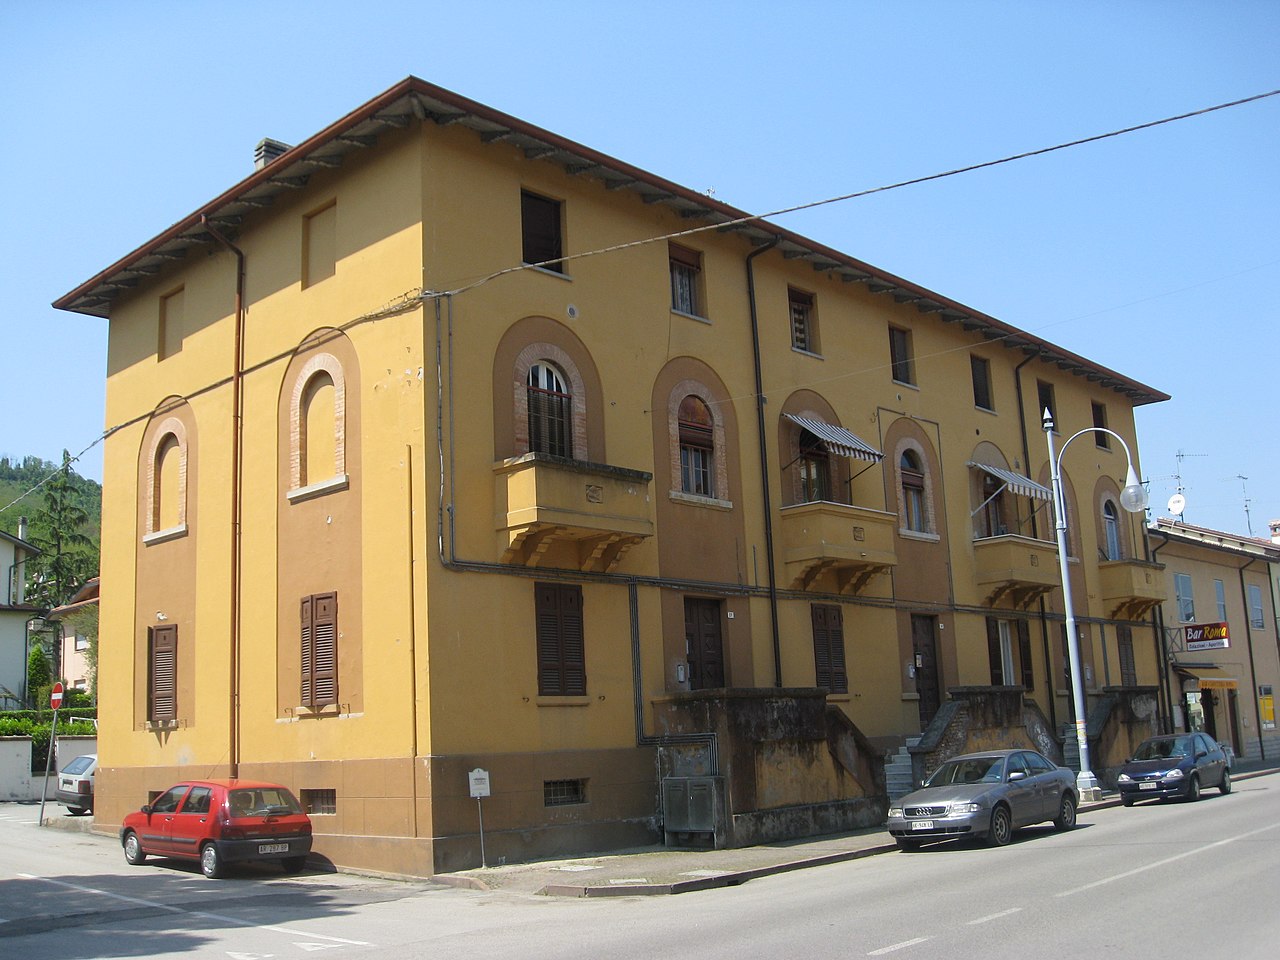 Casa Becker - Predappio , Forlì Cesena - Arch. Florestano Di Fausto - 1925 - 26 